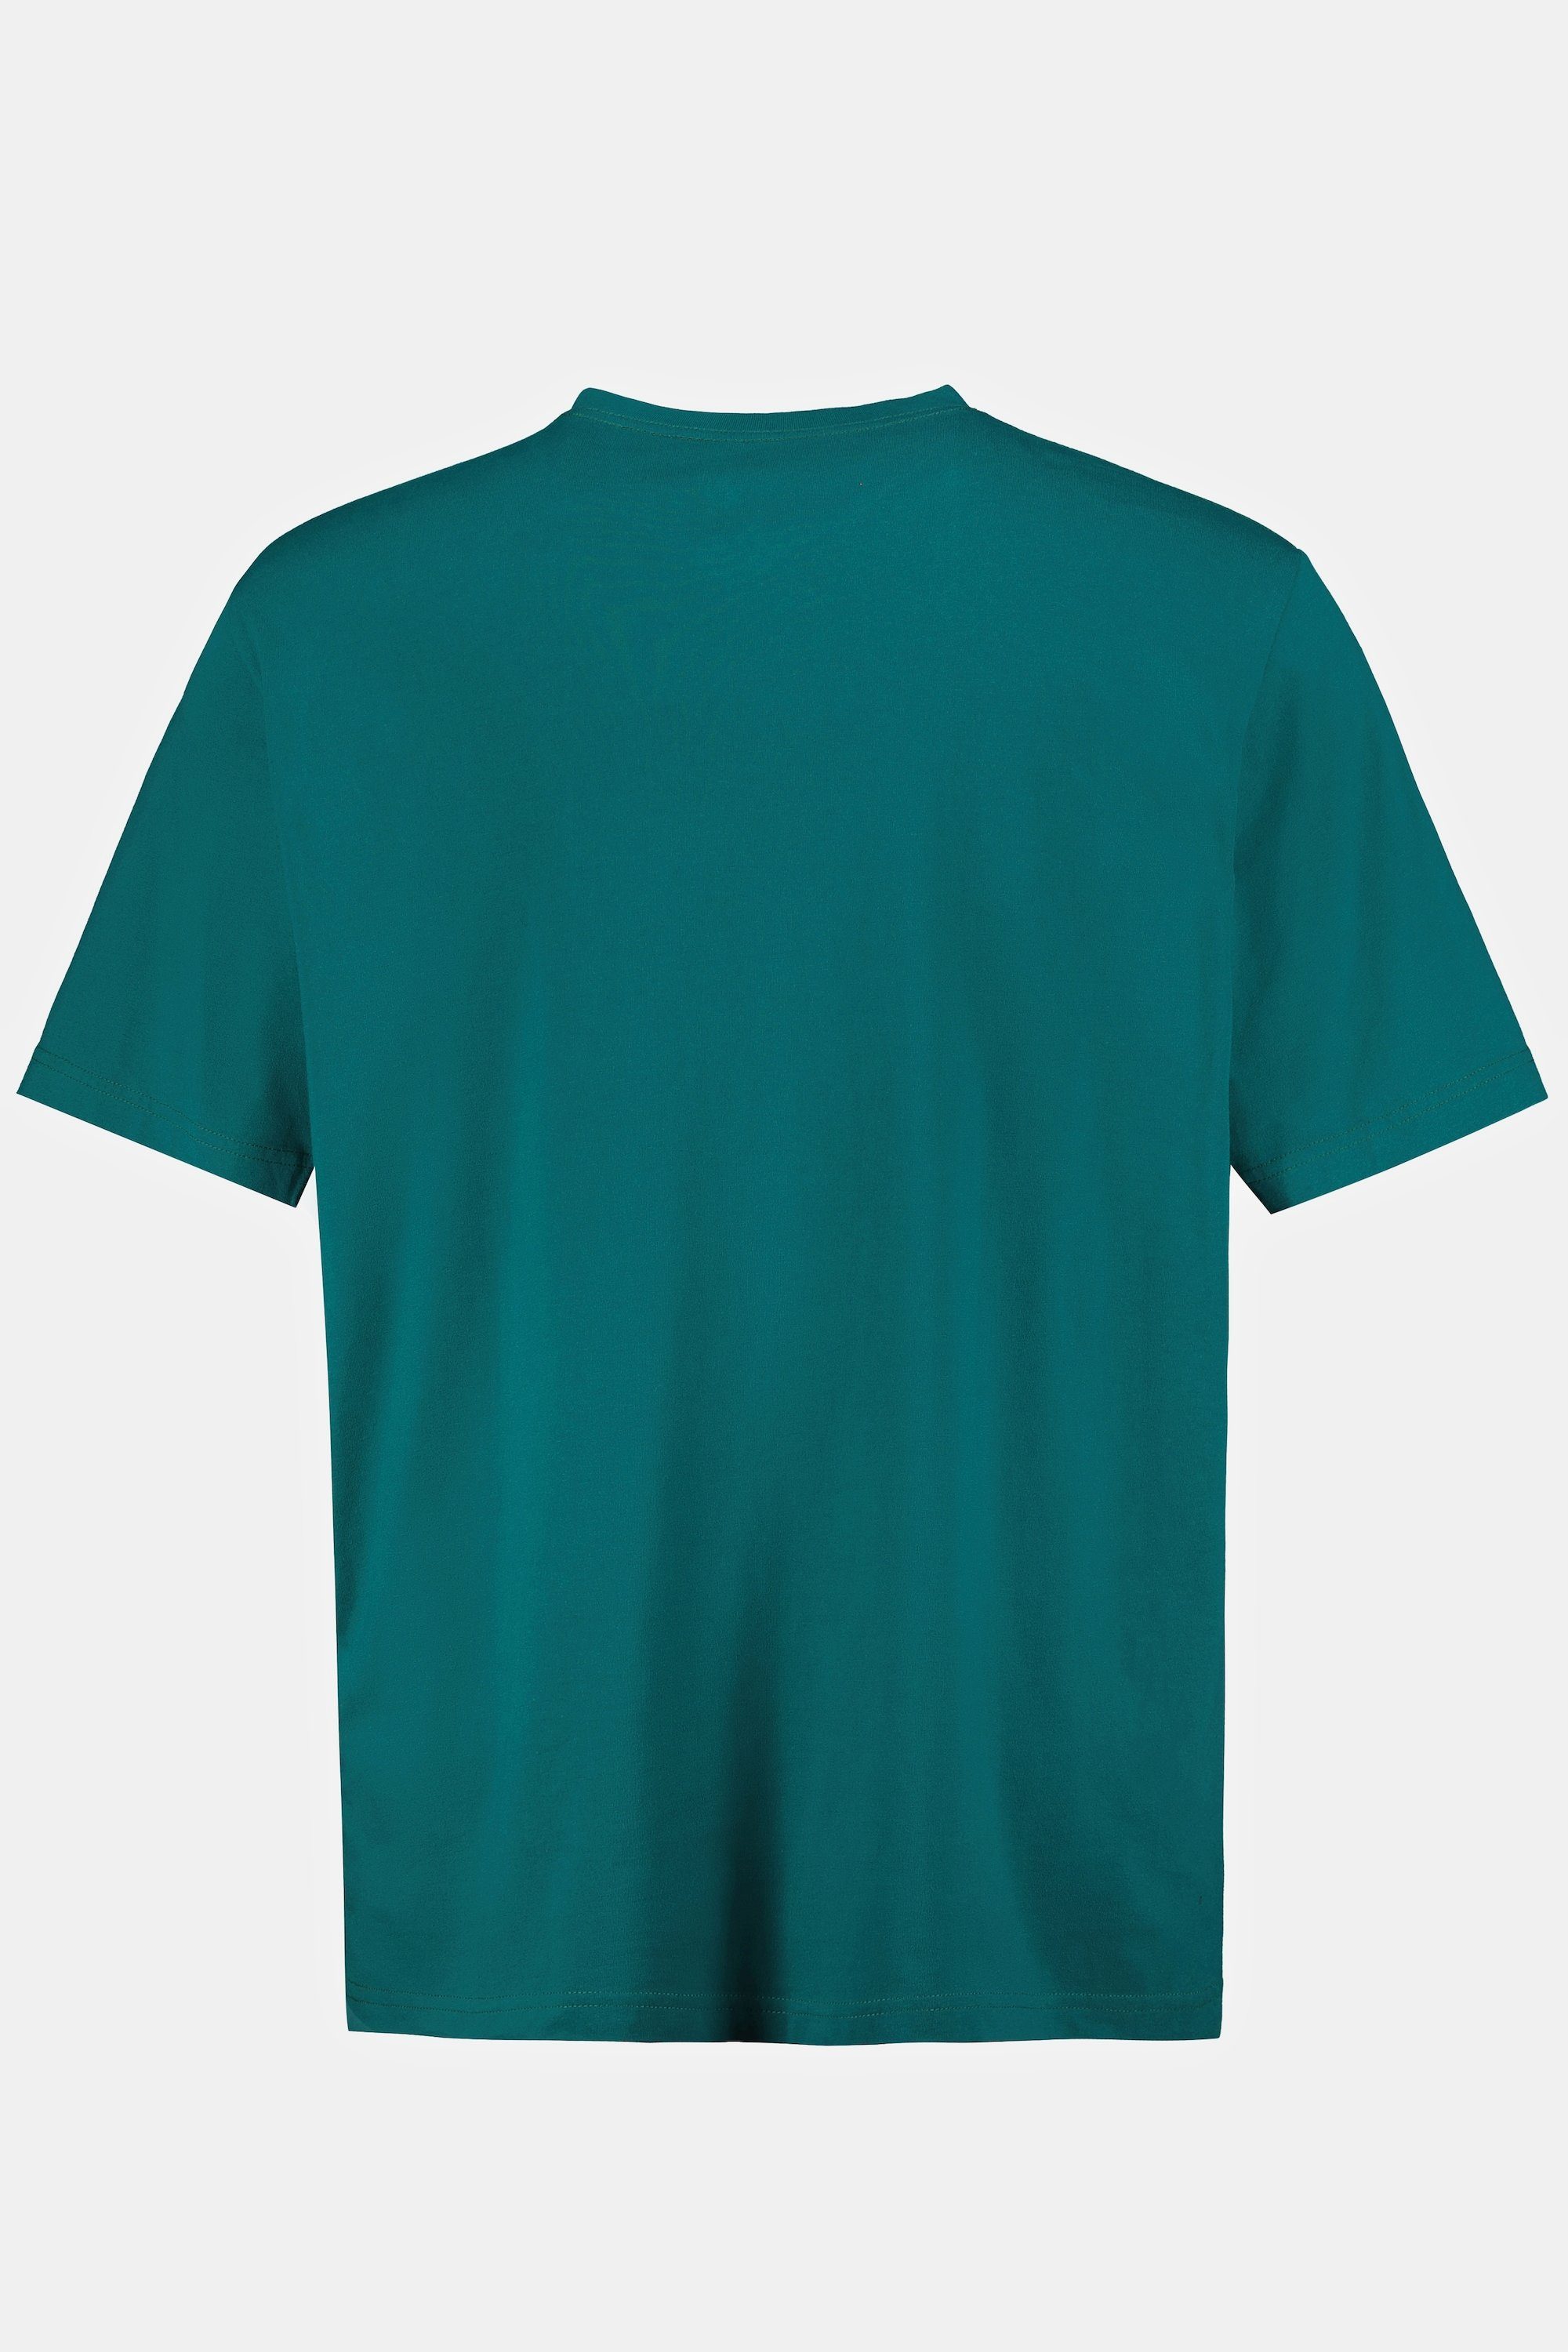 T-Shirt T-Shirt JP1880 8XL petrol bis Basic V-Ausschnitt